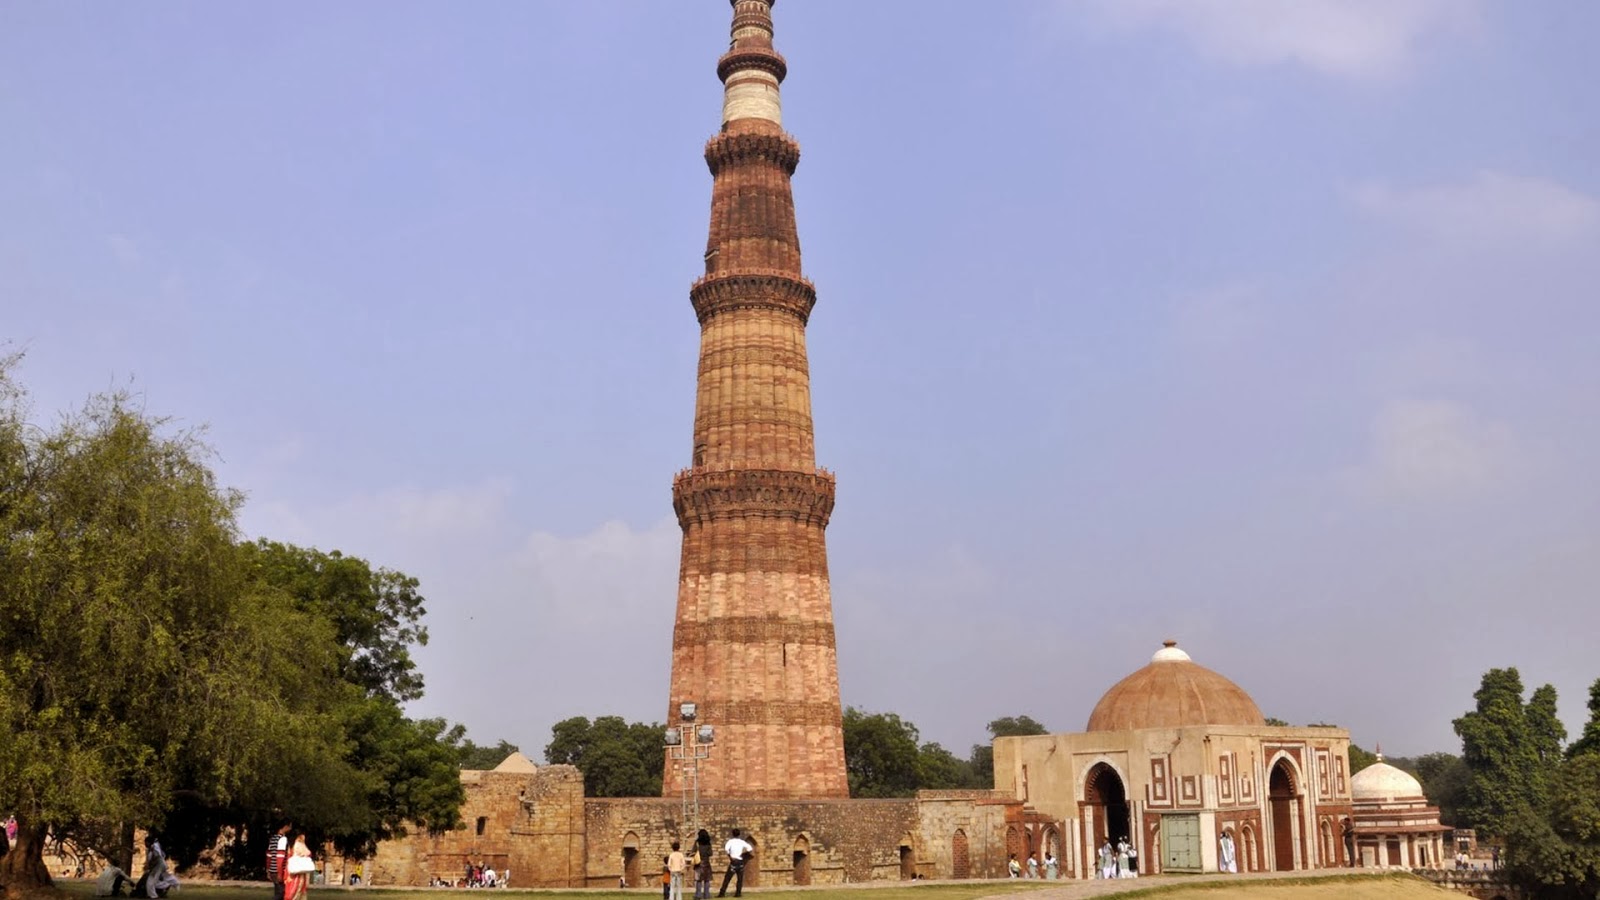 델리 벽지,기념물,탑,건물,유네스코 세계 문화 유산,관광 명소